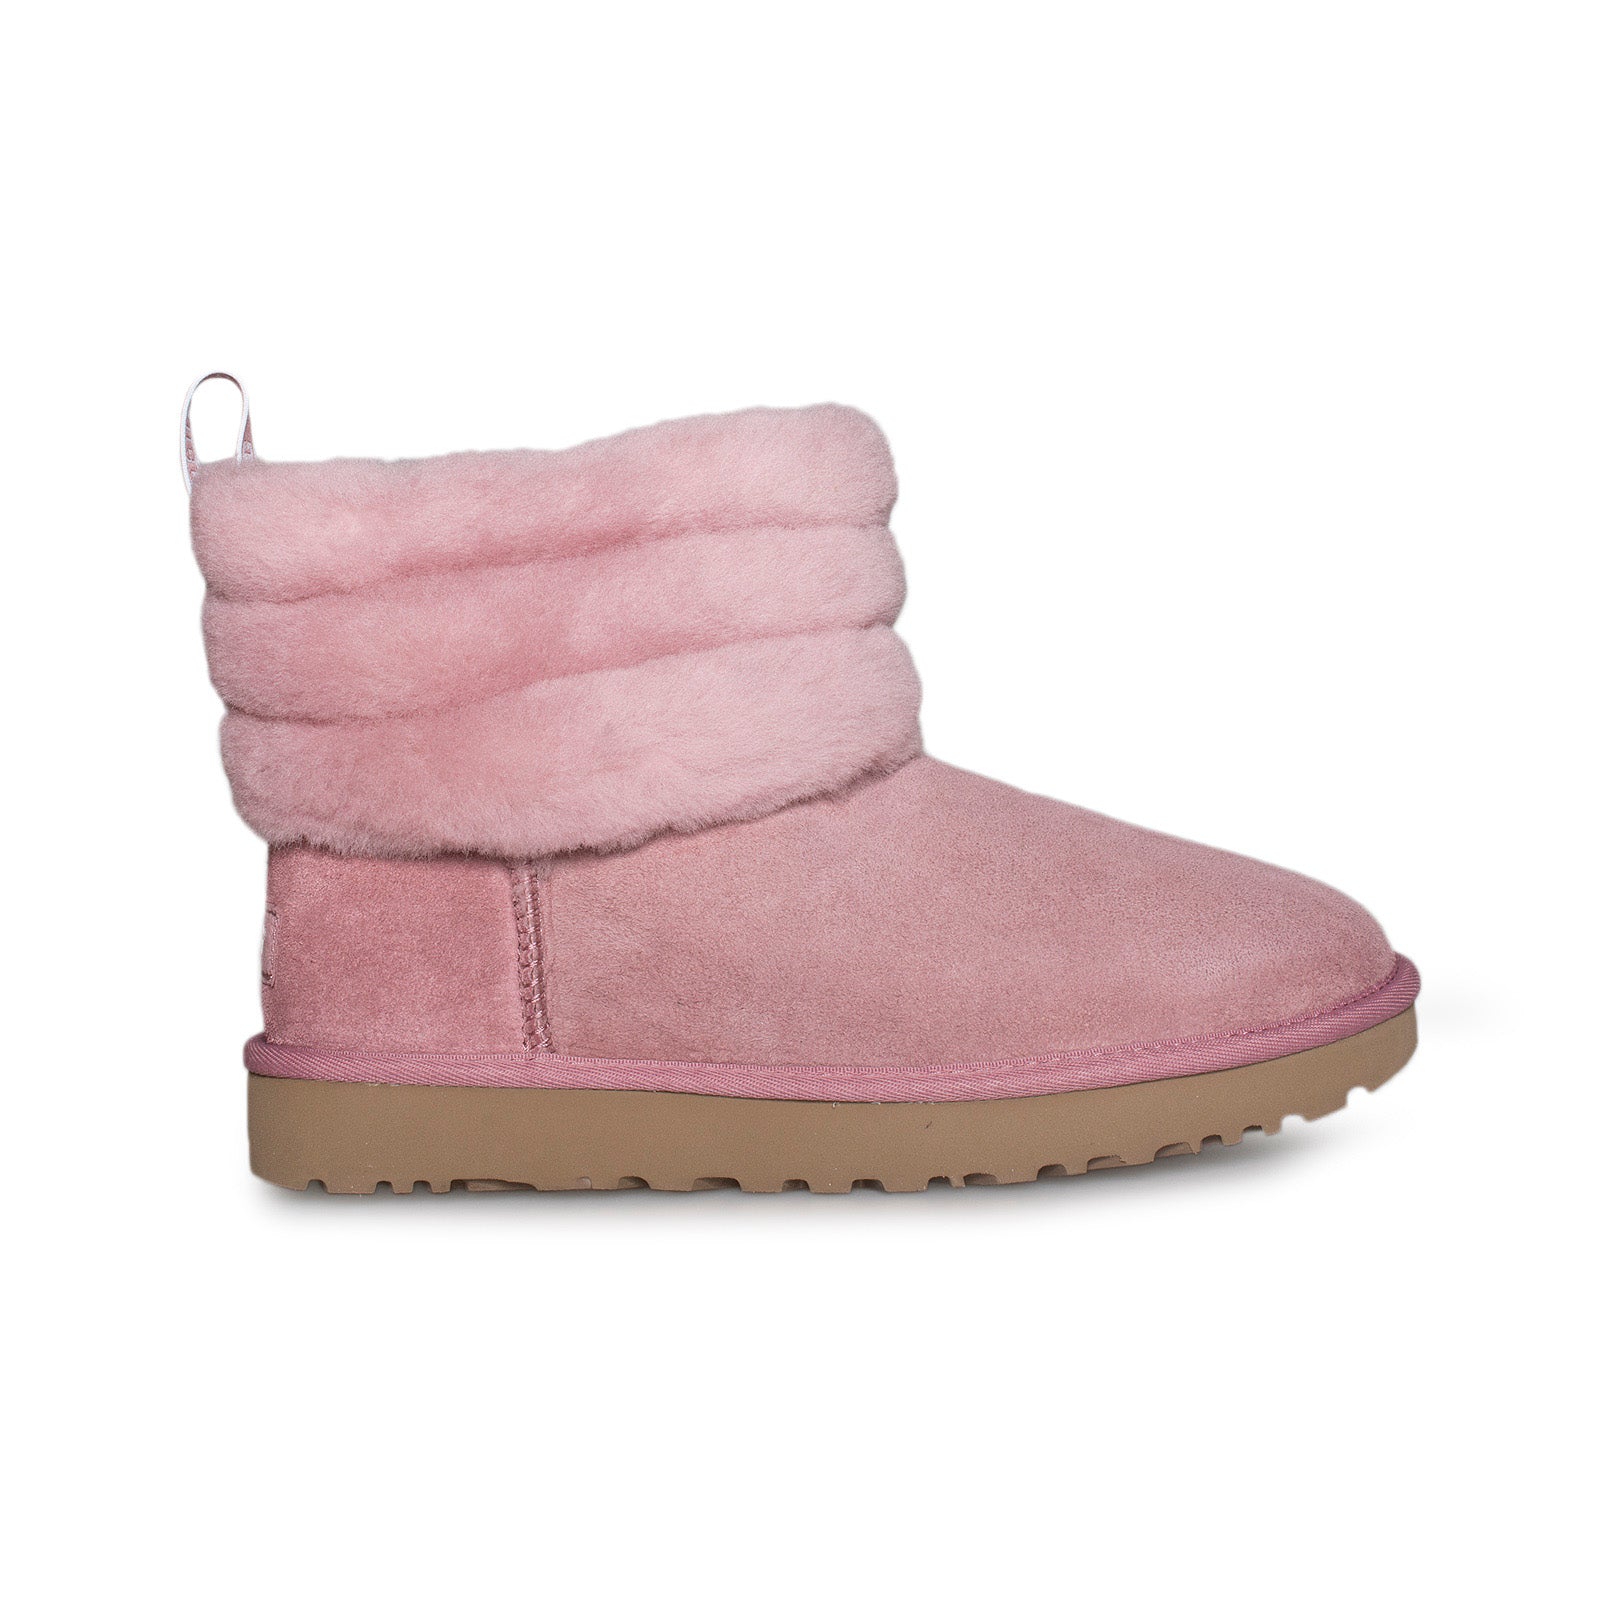 fluff ugg boots pink